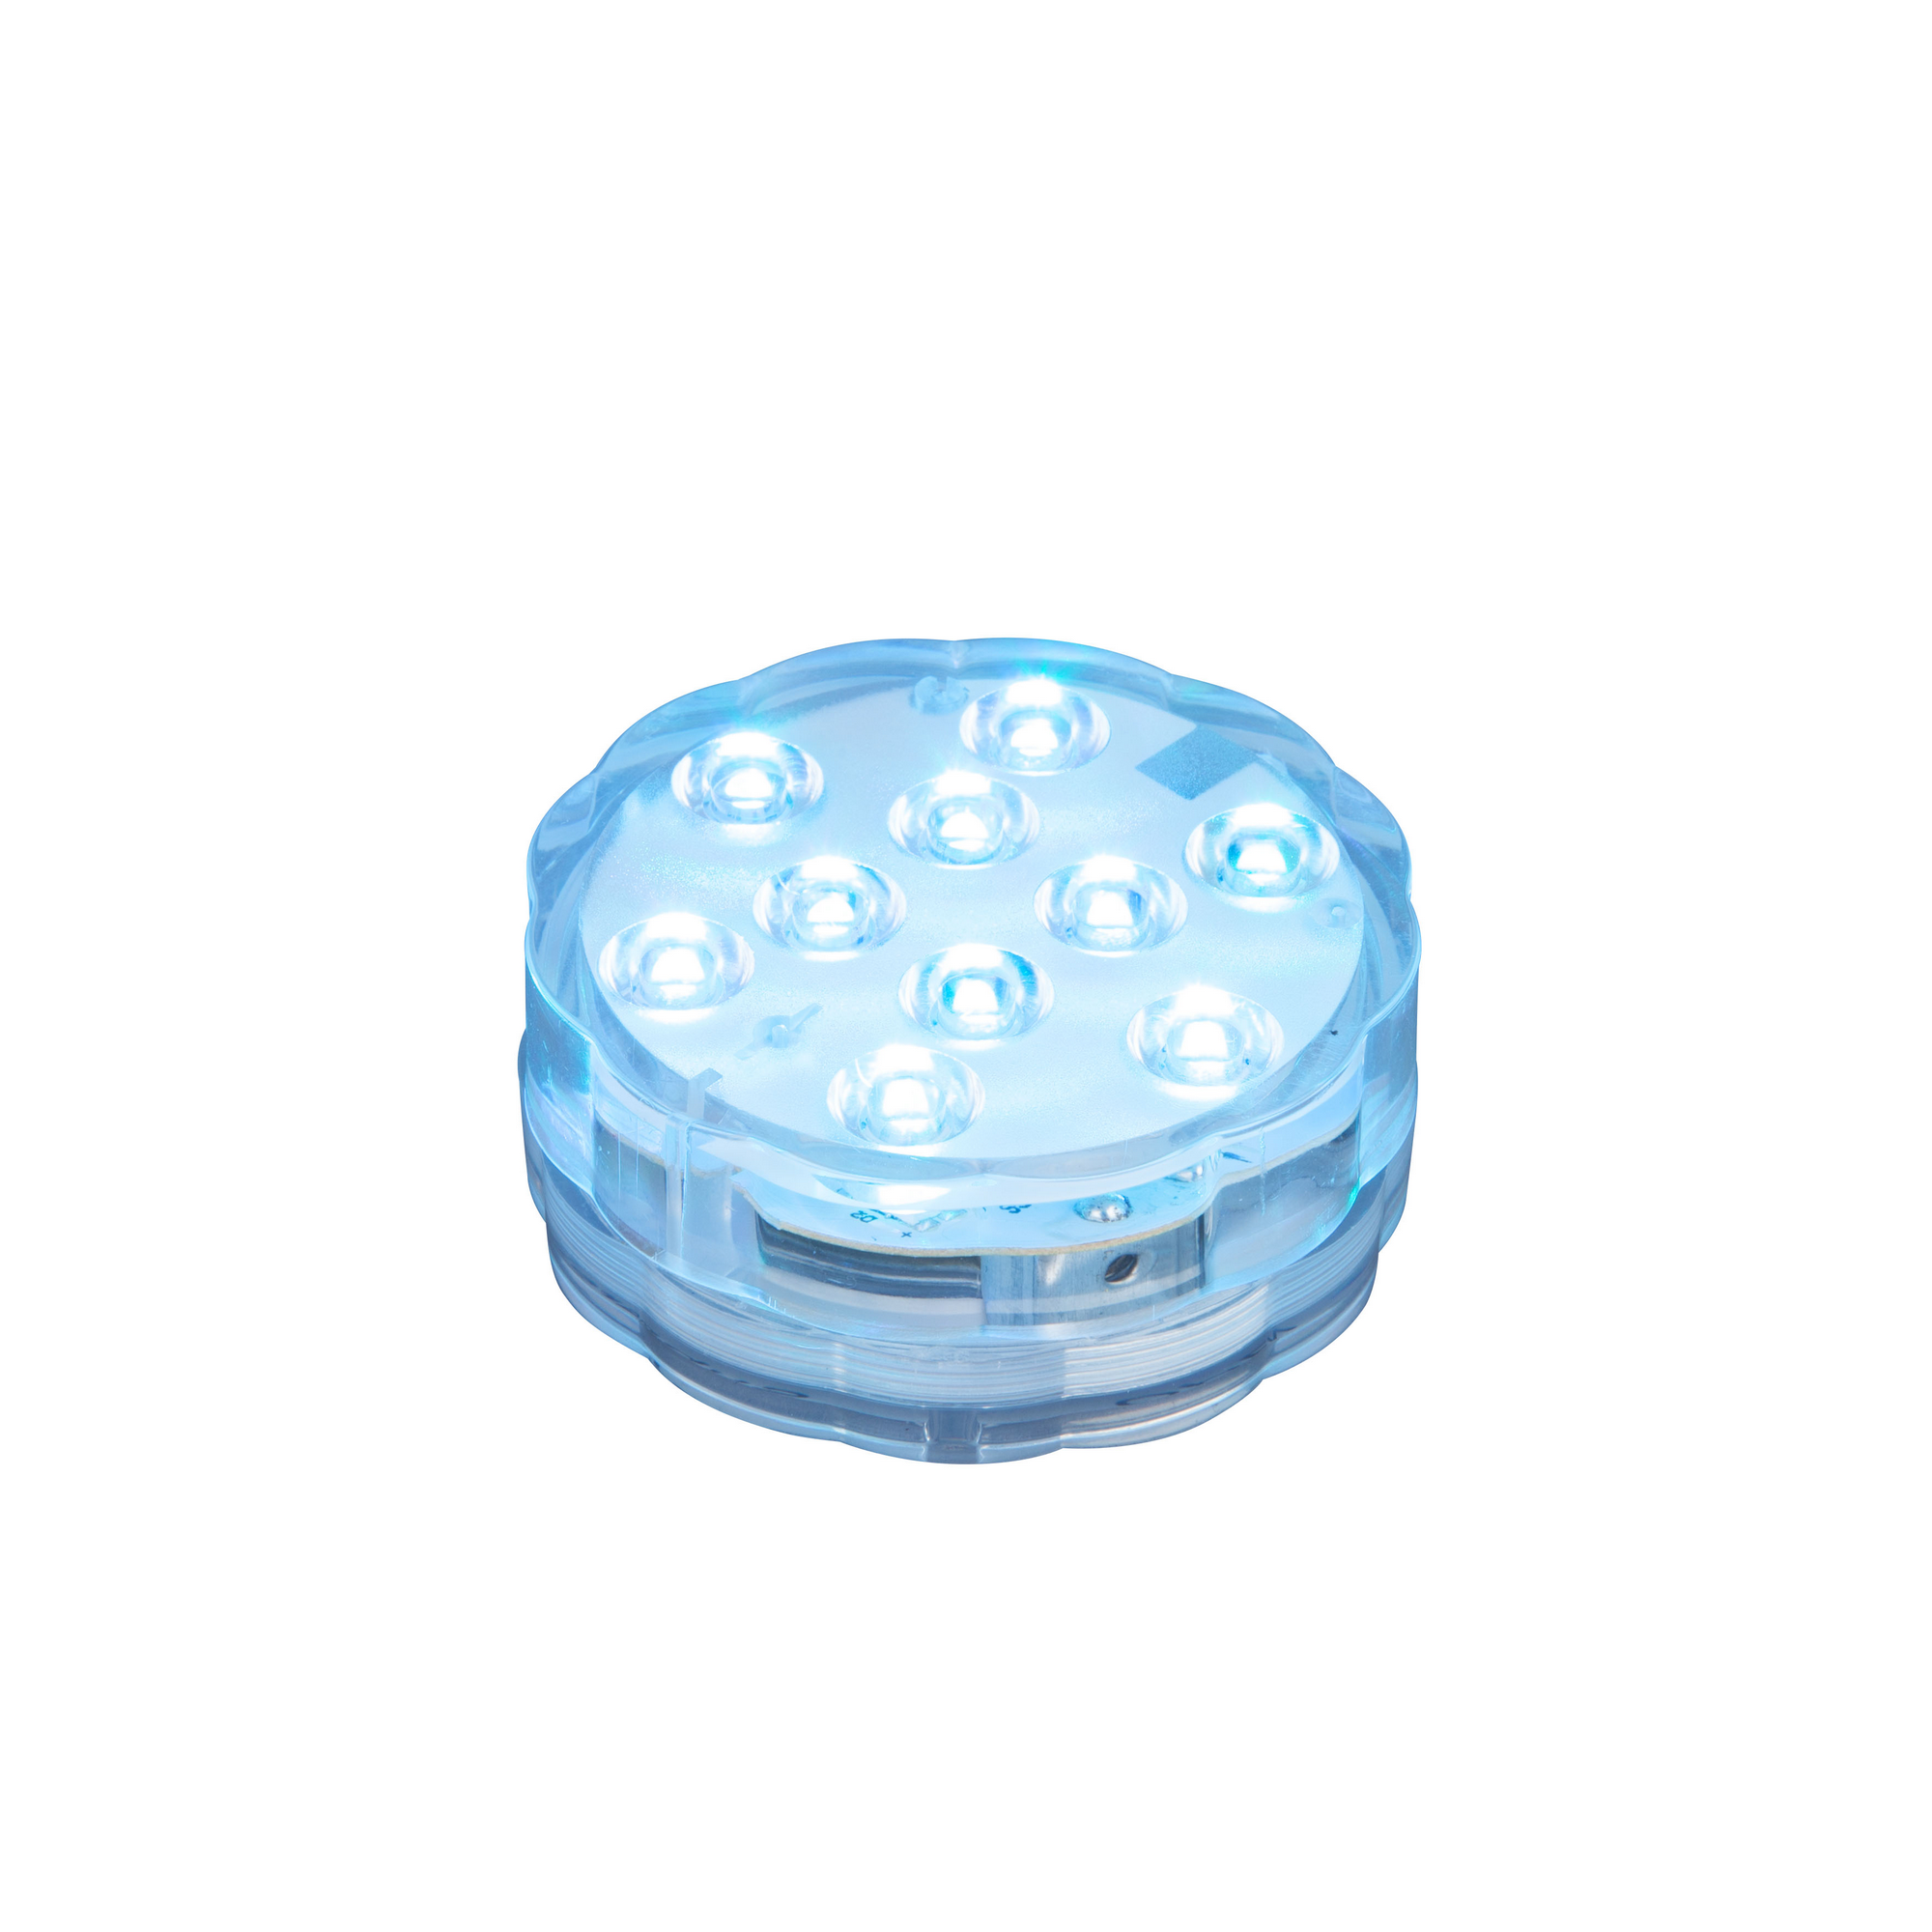 LED-Unterwasserleuchte mit Farbwechsel Ø 6,8 x 2,9 cm + product picture